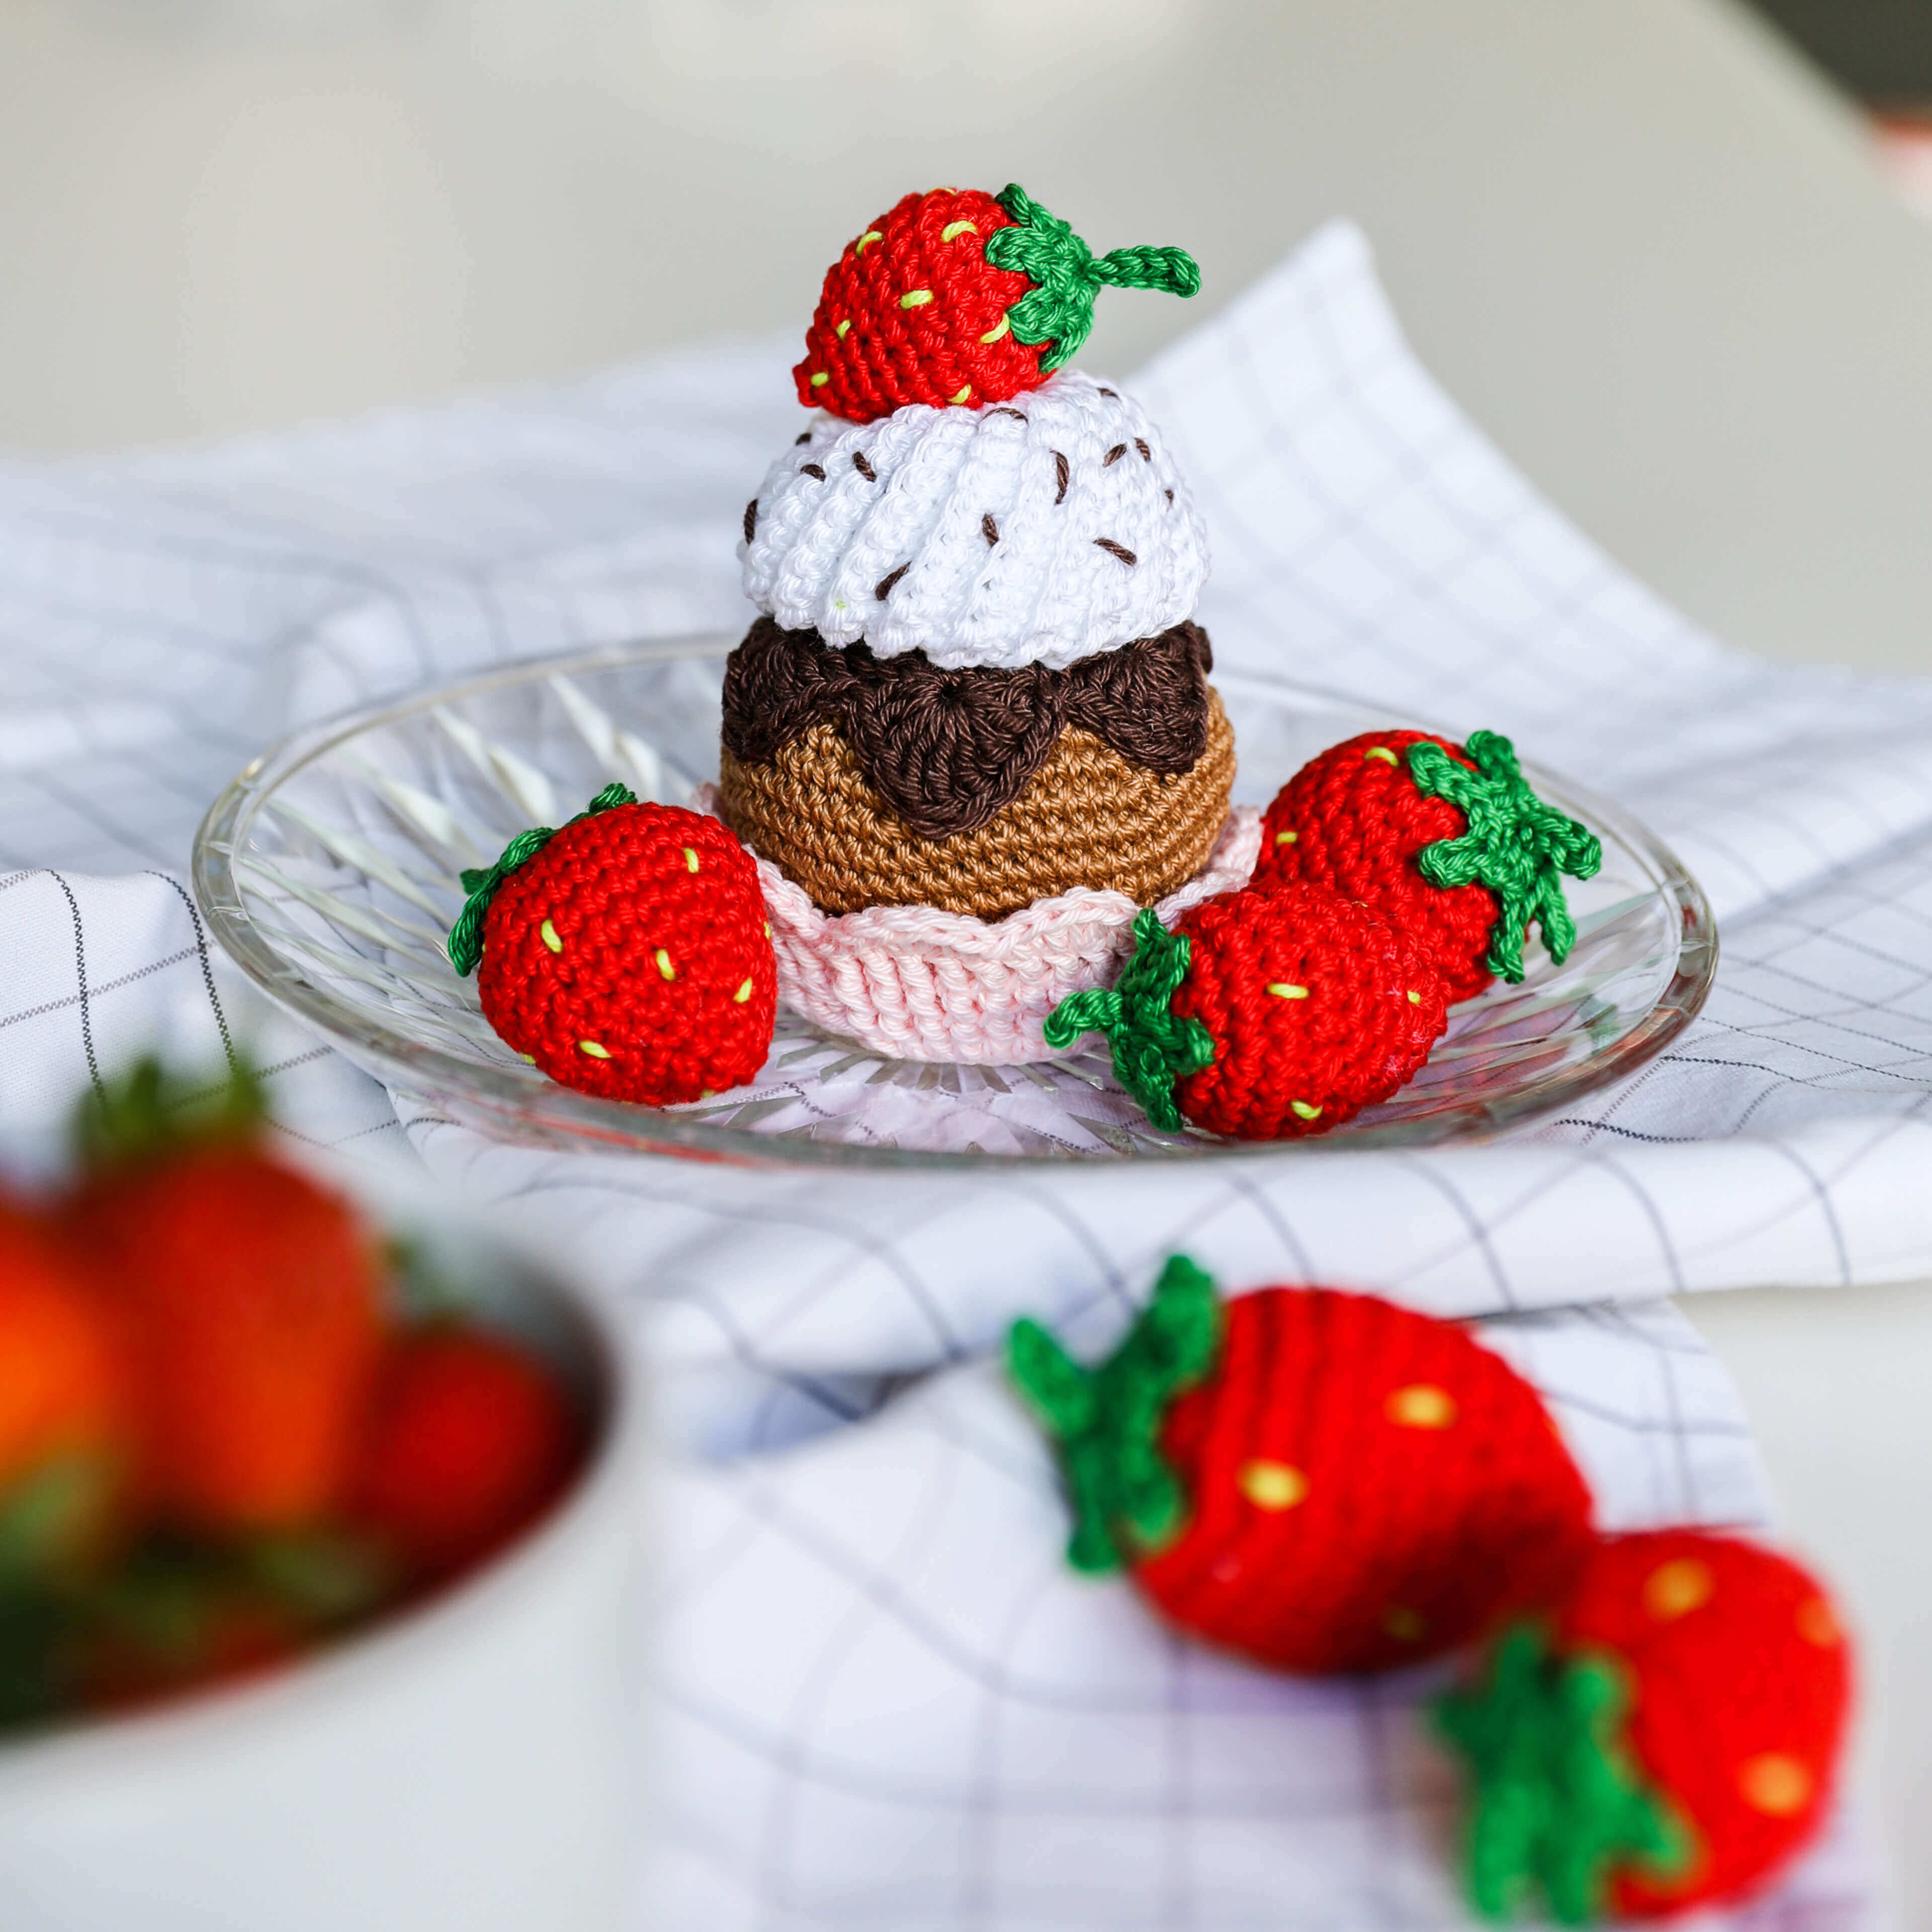 Fraises et cupcake à la fraise